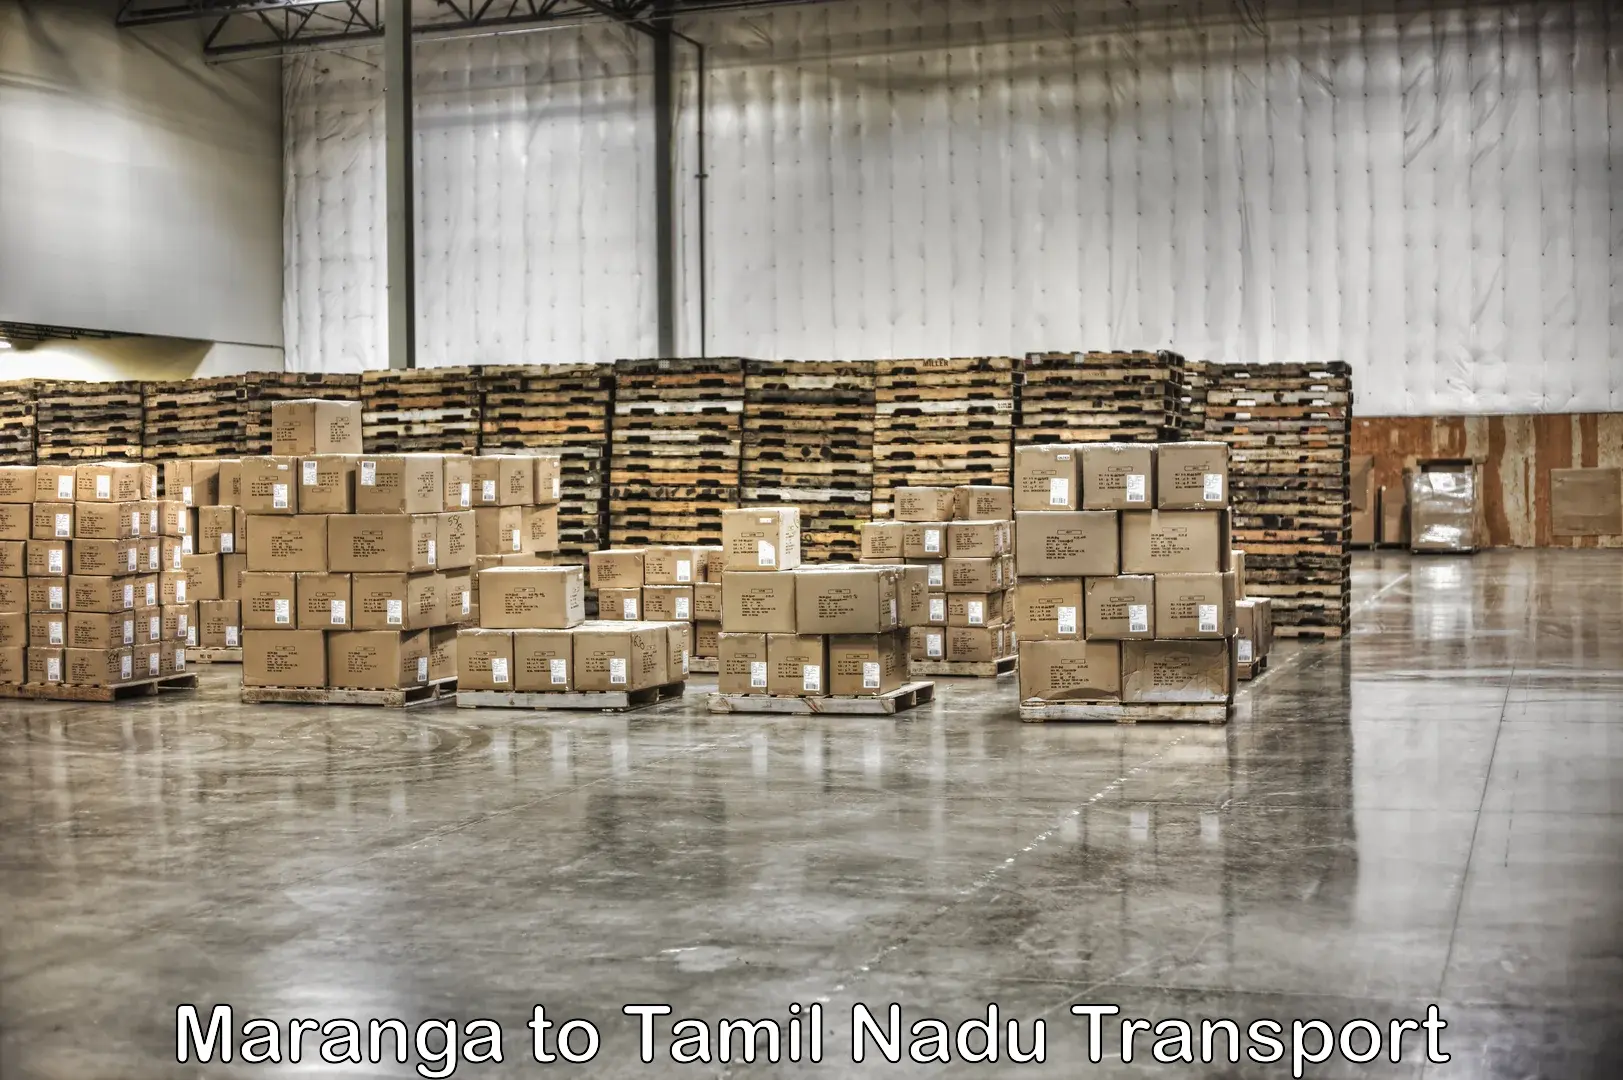 Intercity goods transport Maranga to IIIT Tiruchirappalli